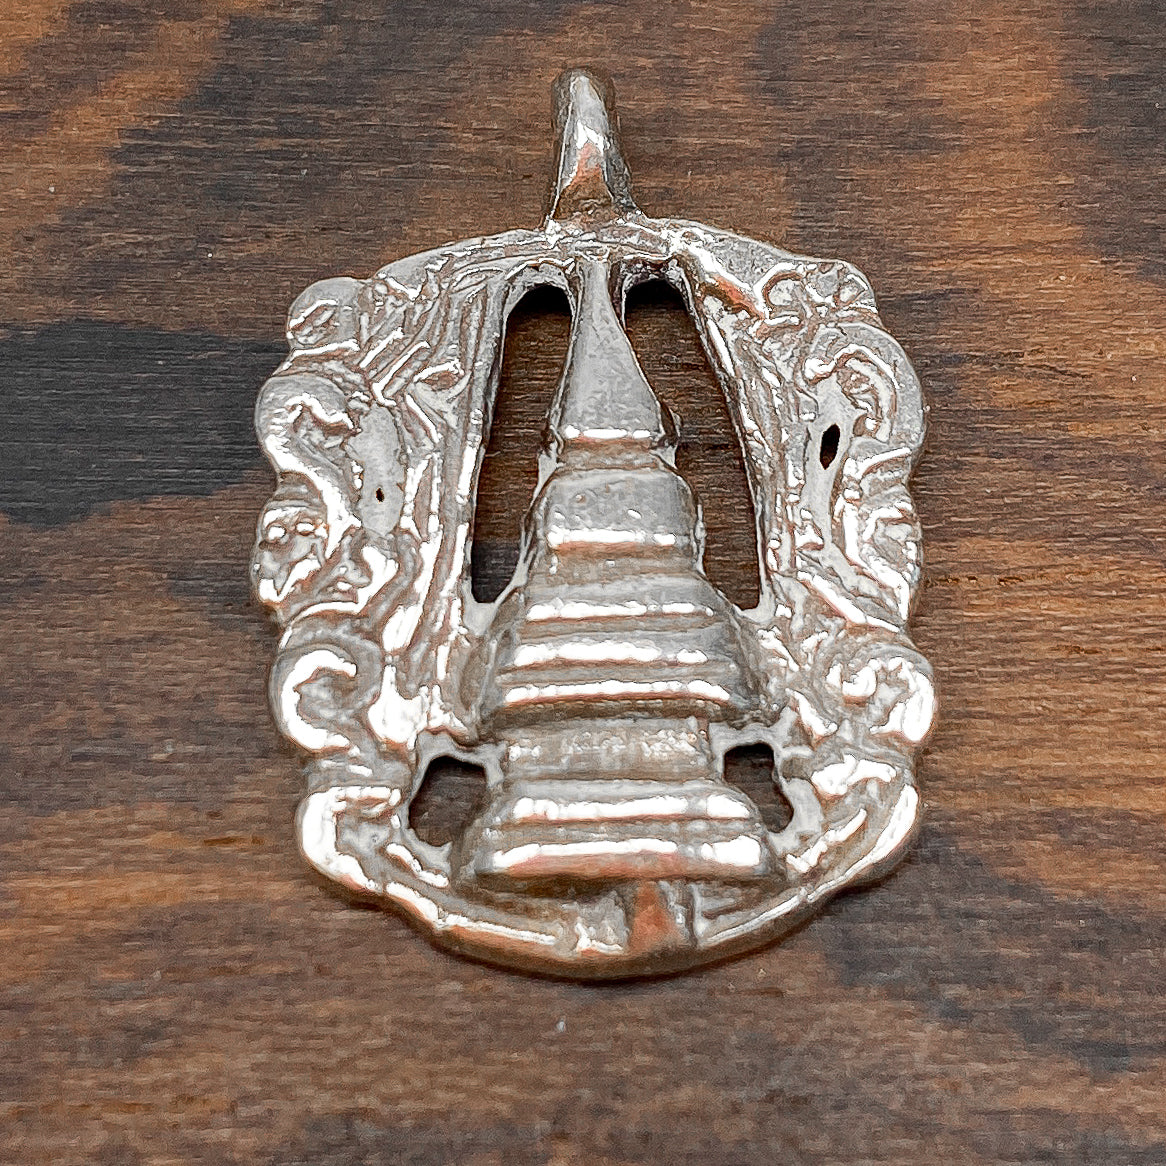 Stupa Thai Silver Pendant - 1 pc.